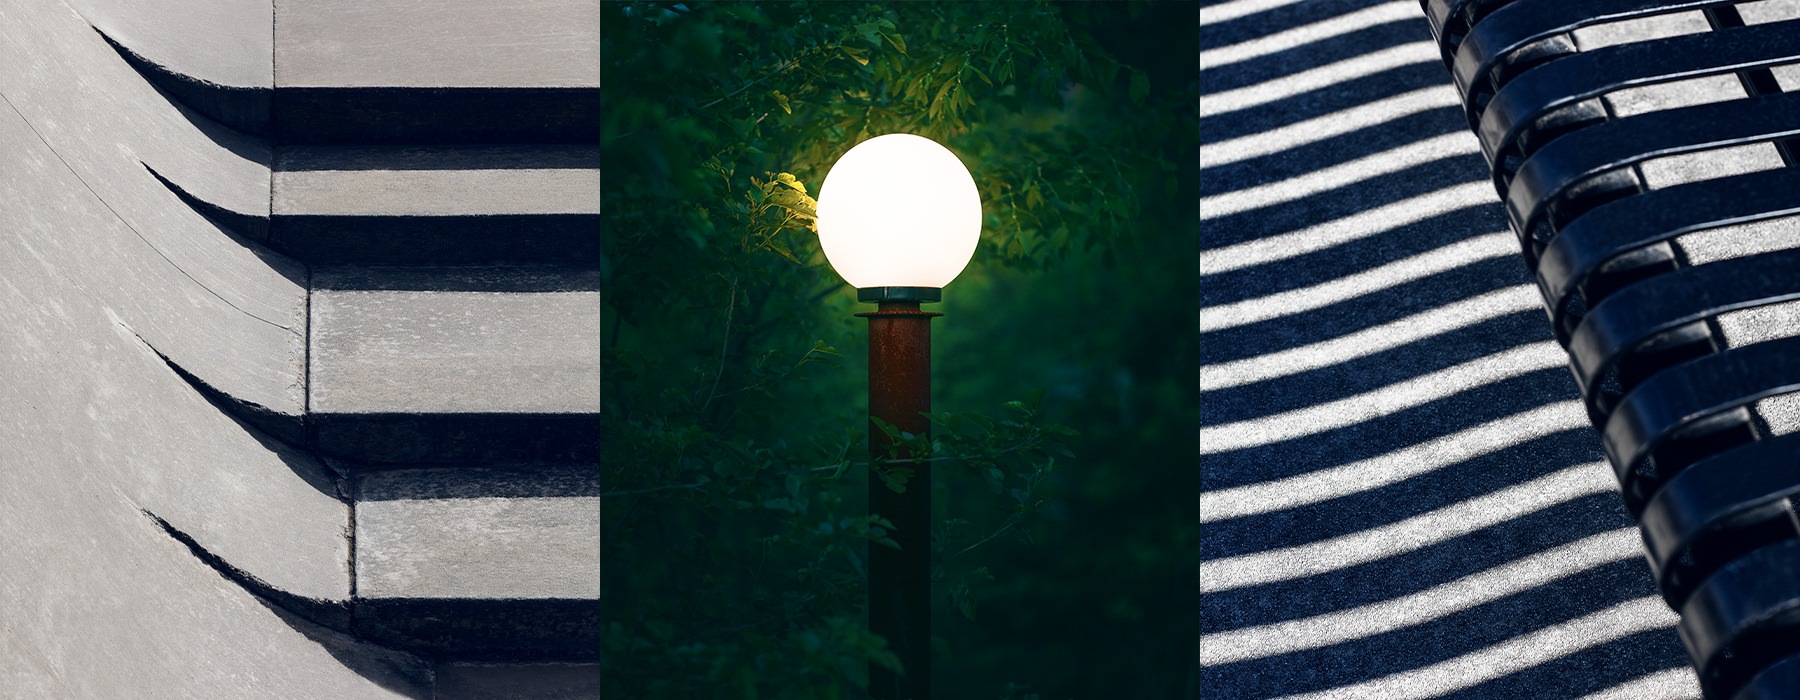 light fixture between two industrial images